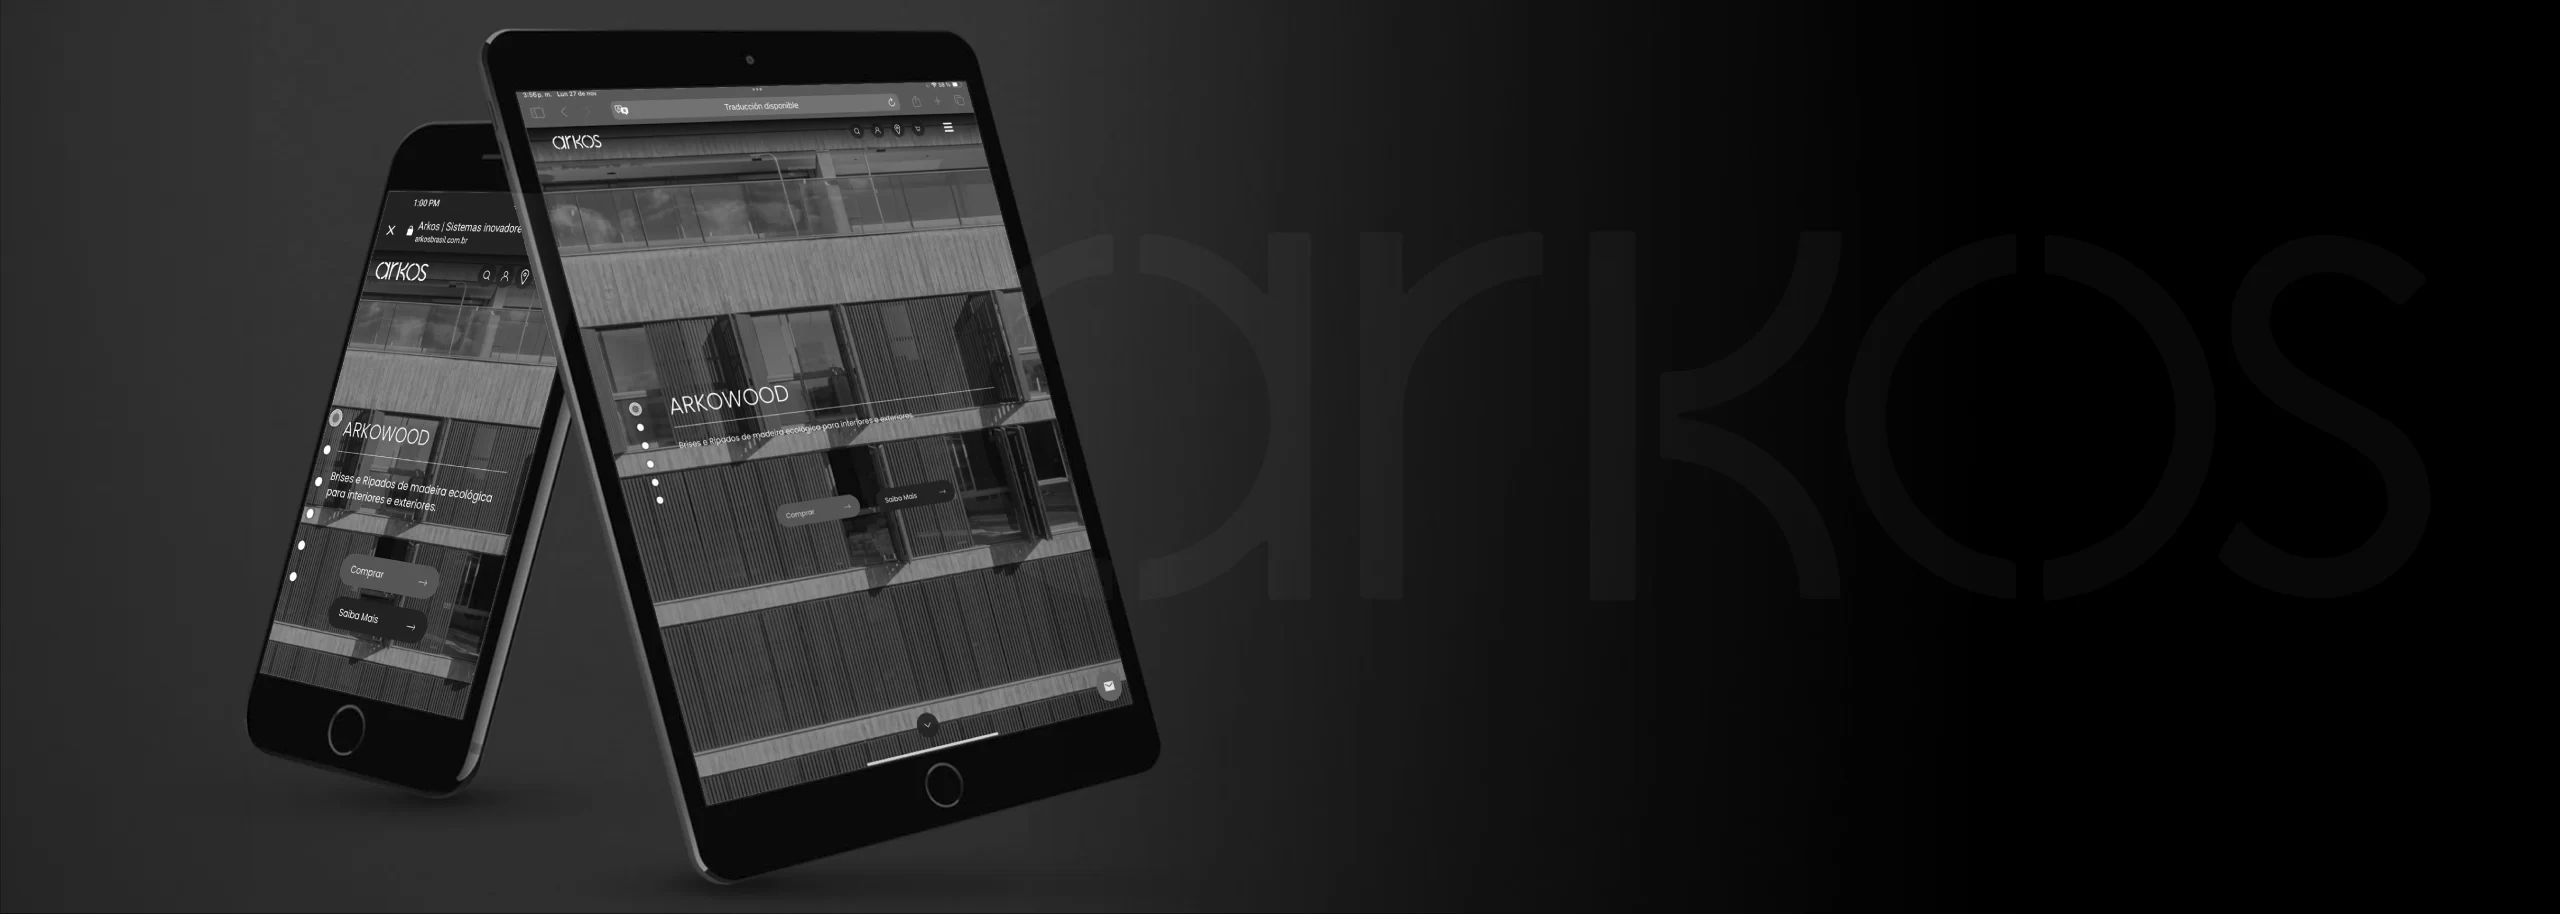 pagina principal de arkos vista desde una tablet y una laptop